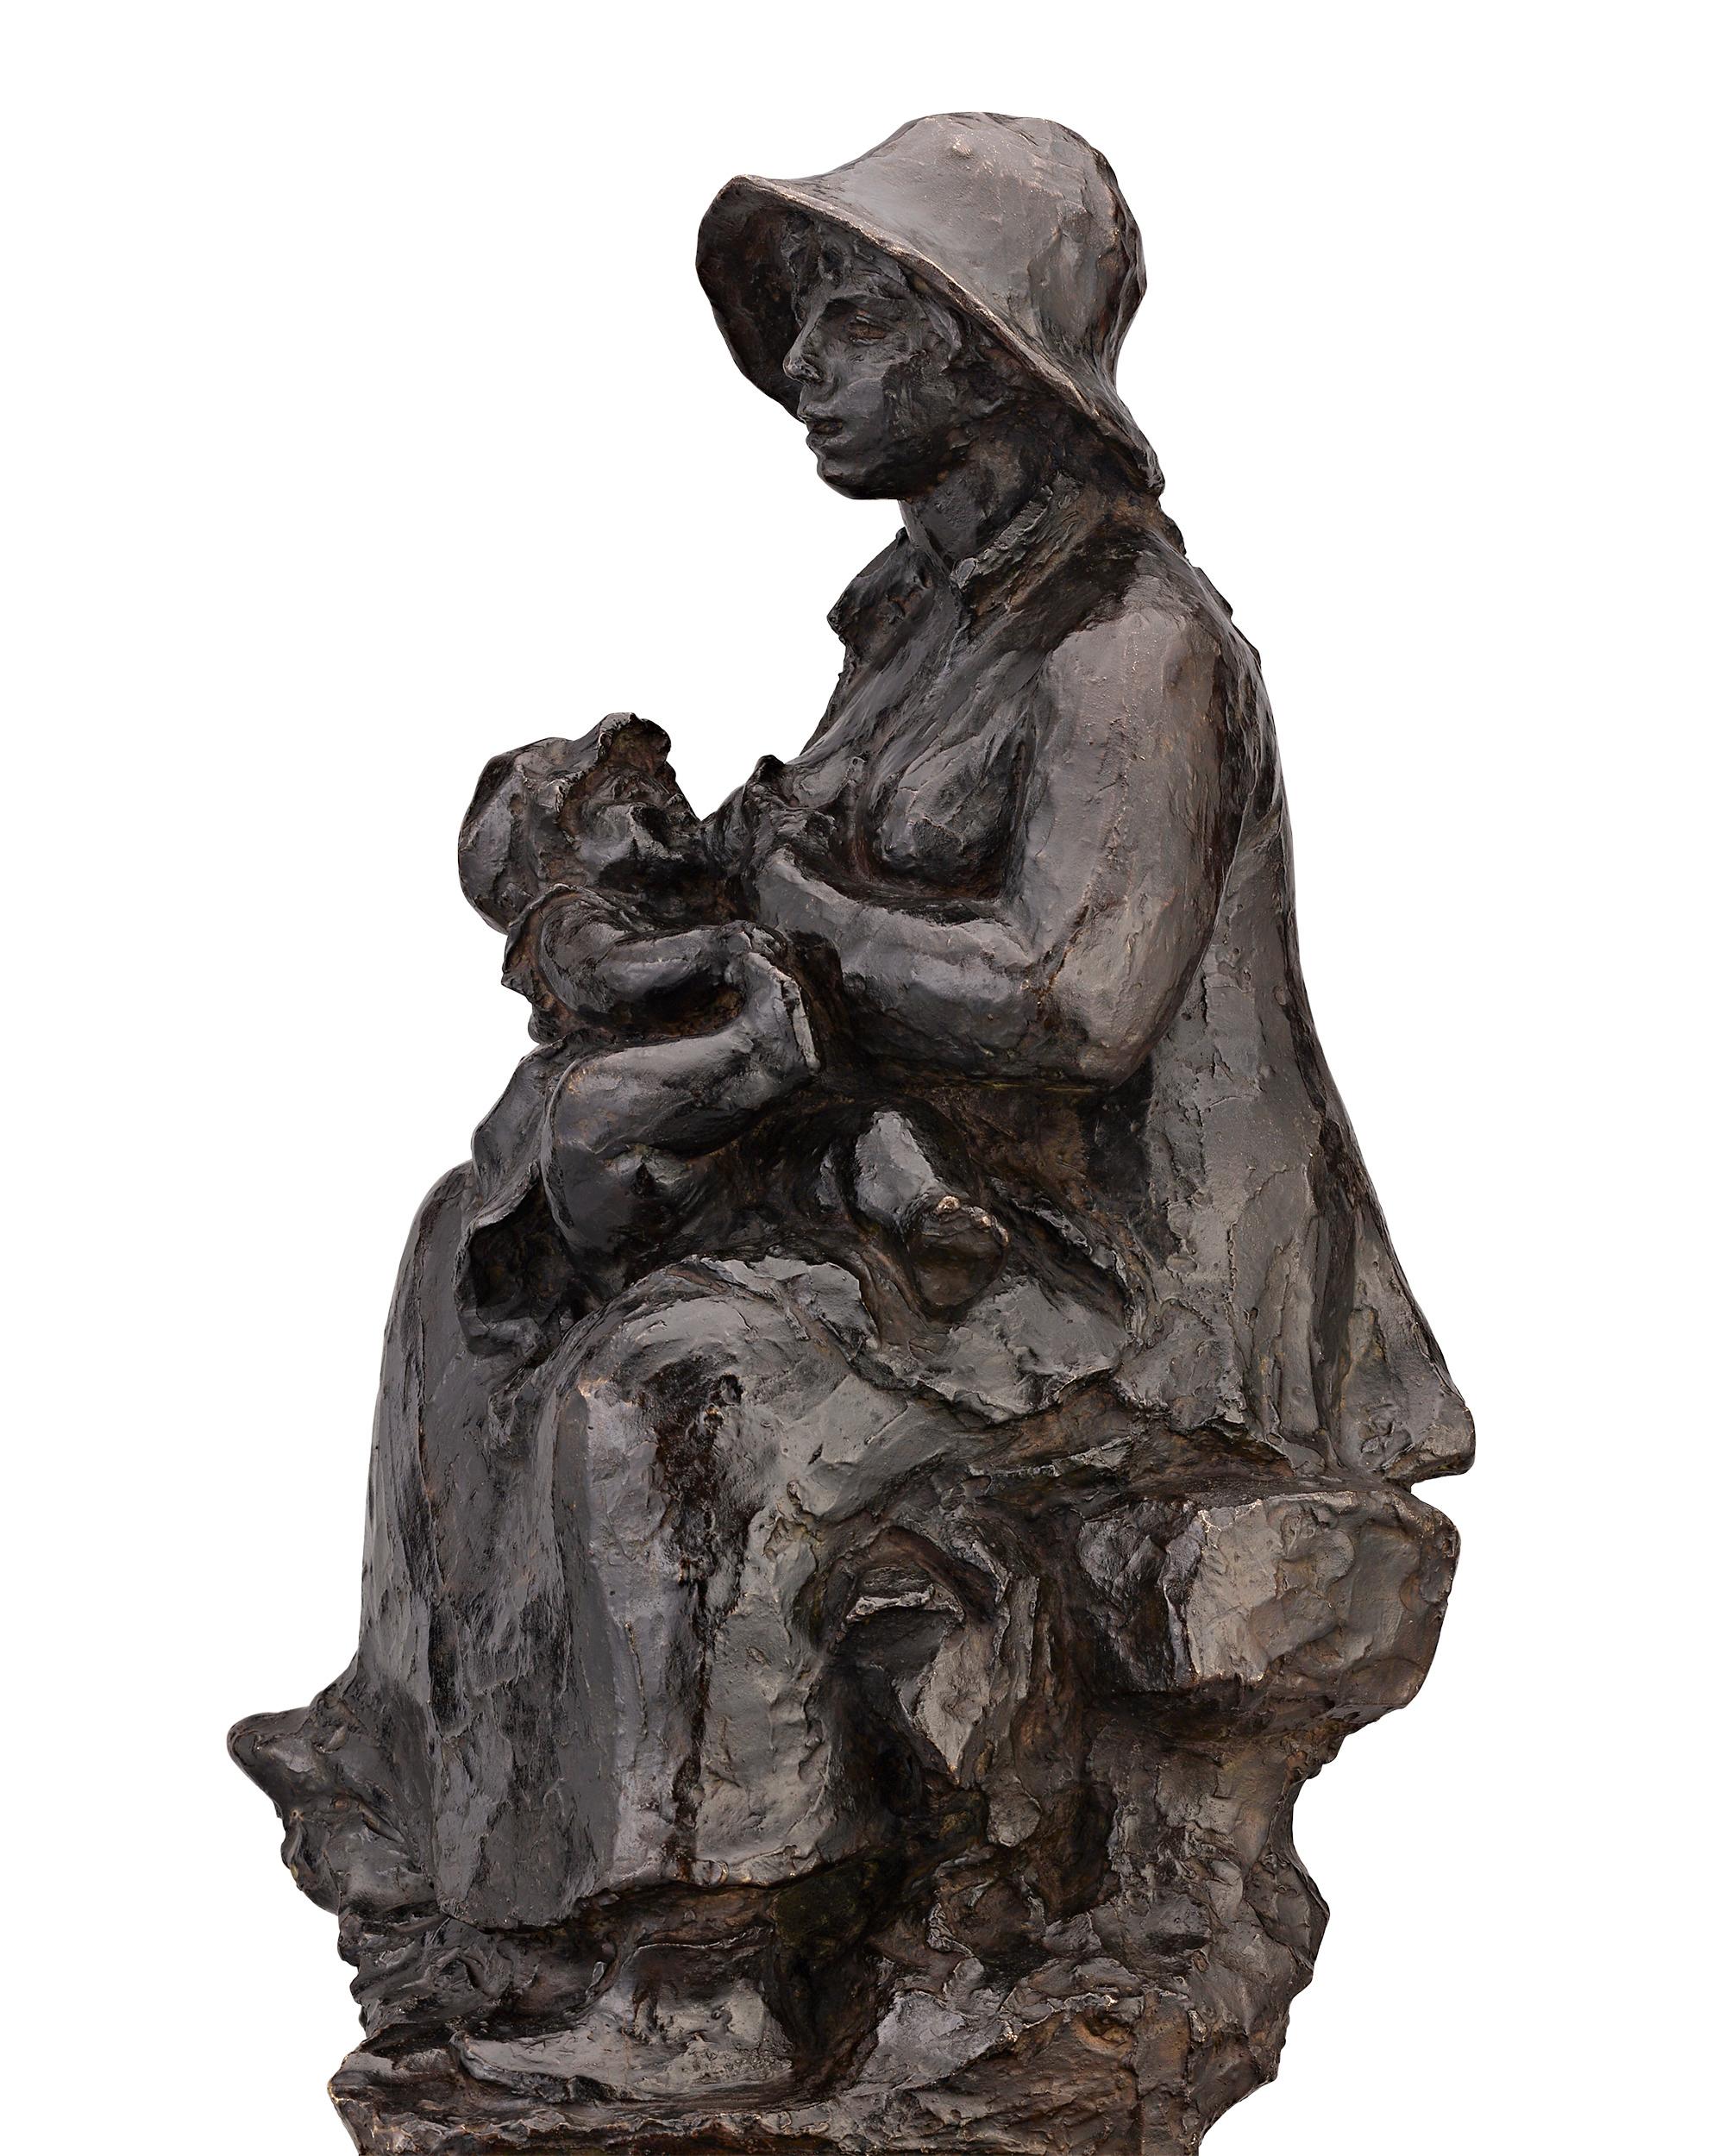 La Maternité - Impressionist Sculpture by Pierre-Auguste Renoir